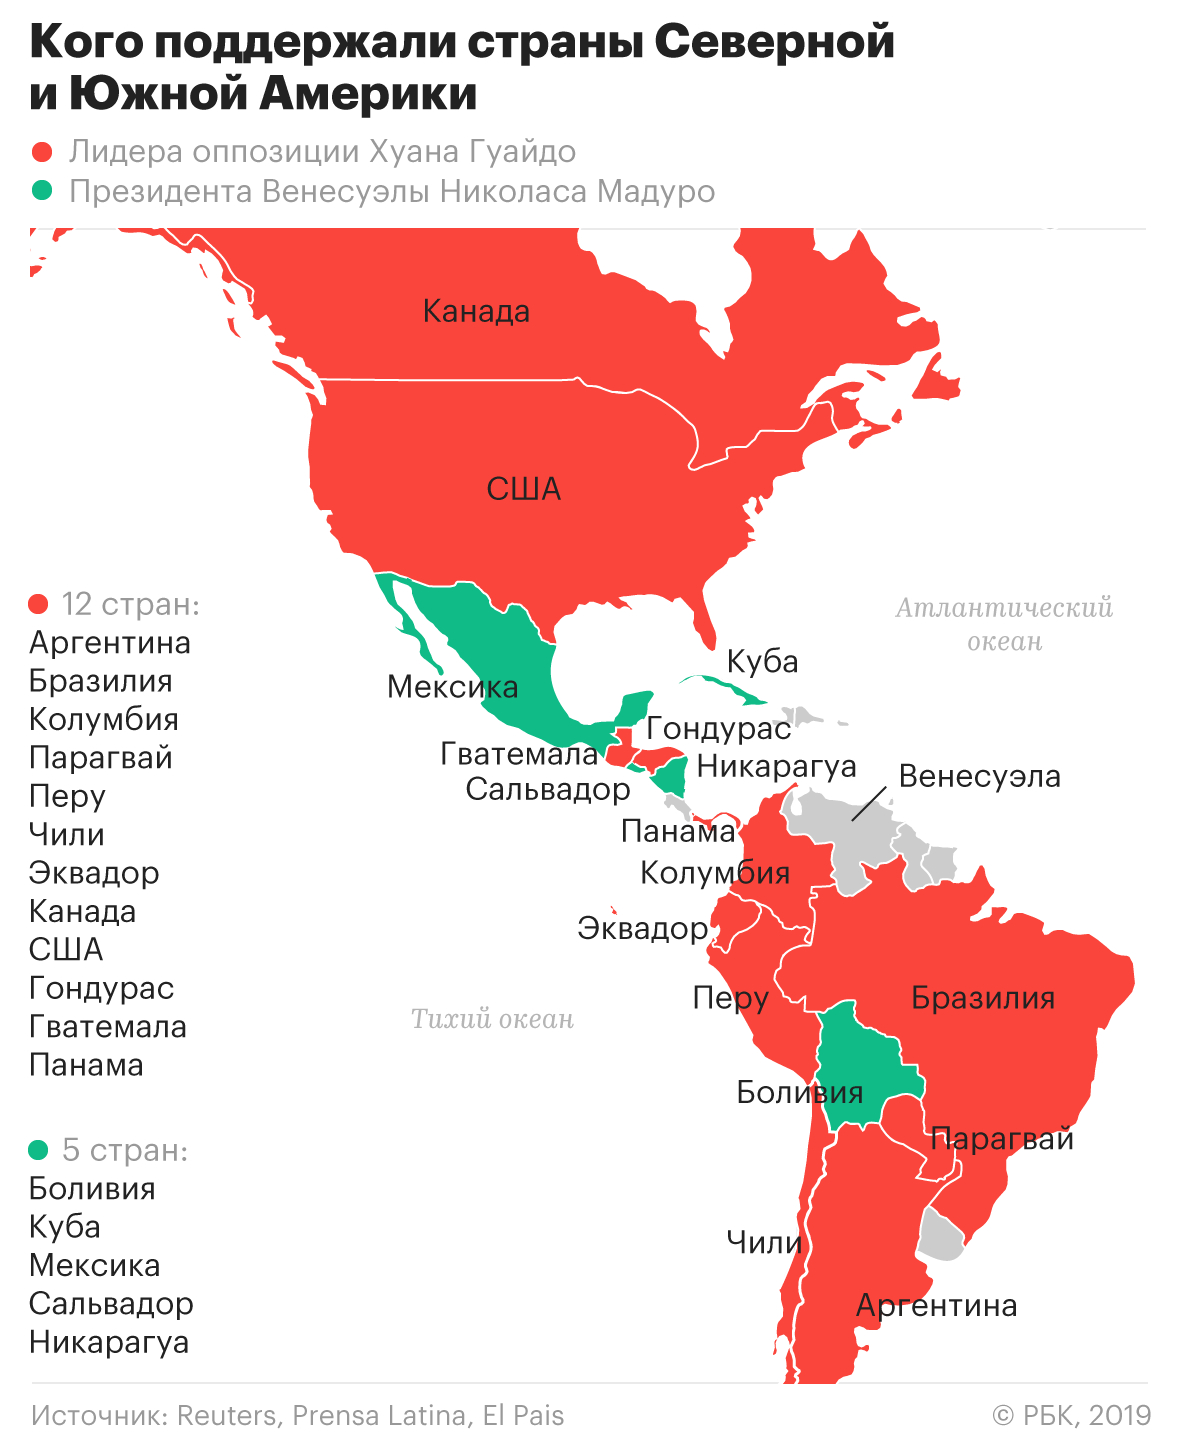 Раздвоение президента: что дальше будет в Венесуэле